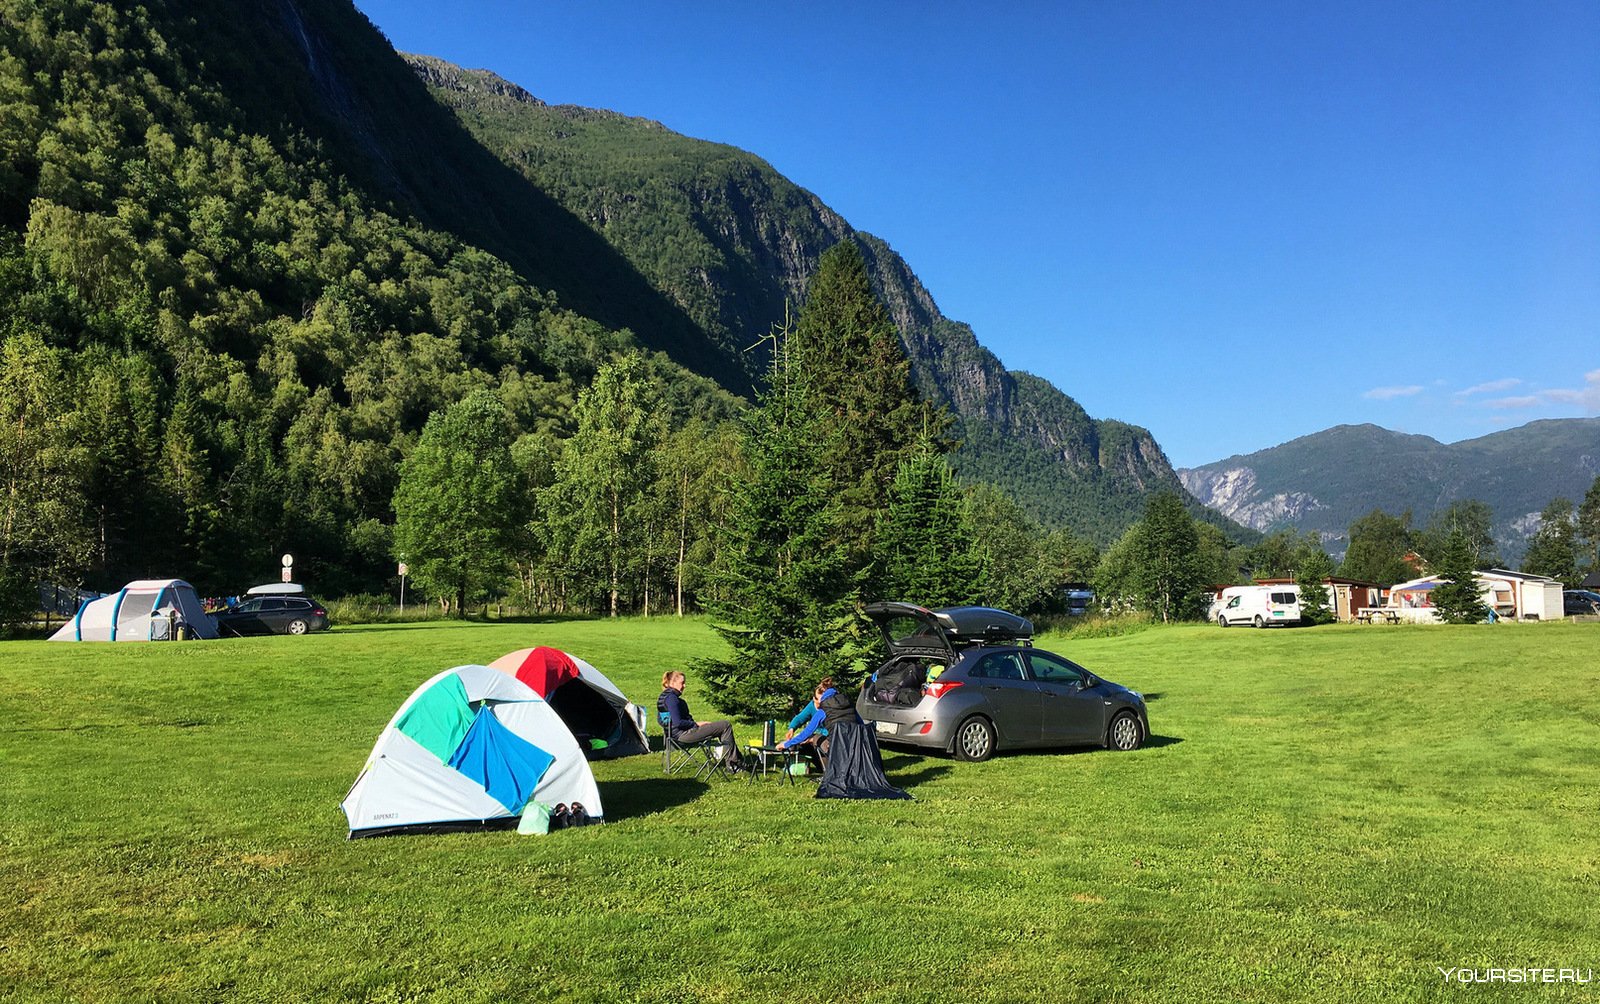 Tourist camping. Палаточный лагерь в Норвегии. Кэмпинг Панорамико Италия. Палатка в горах.